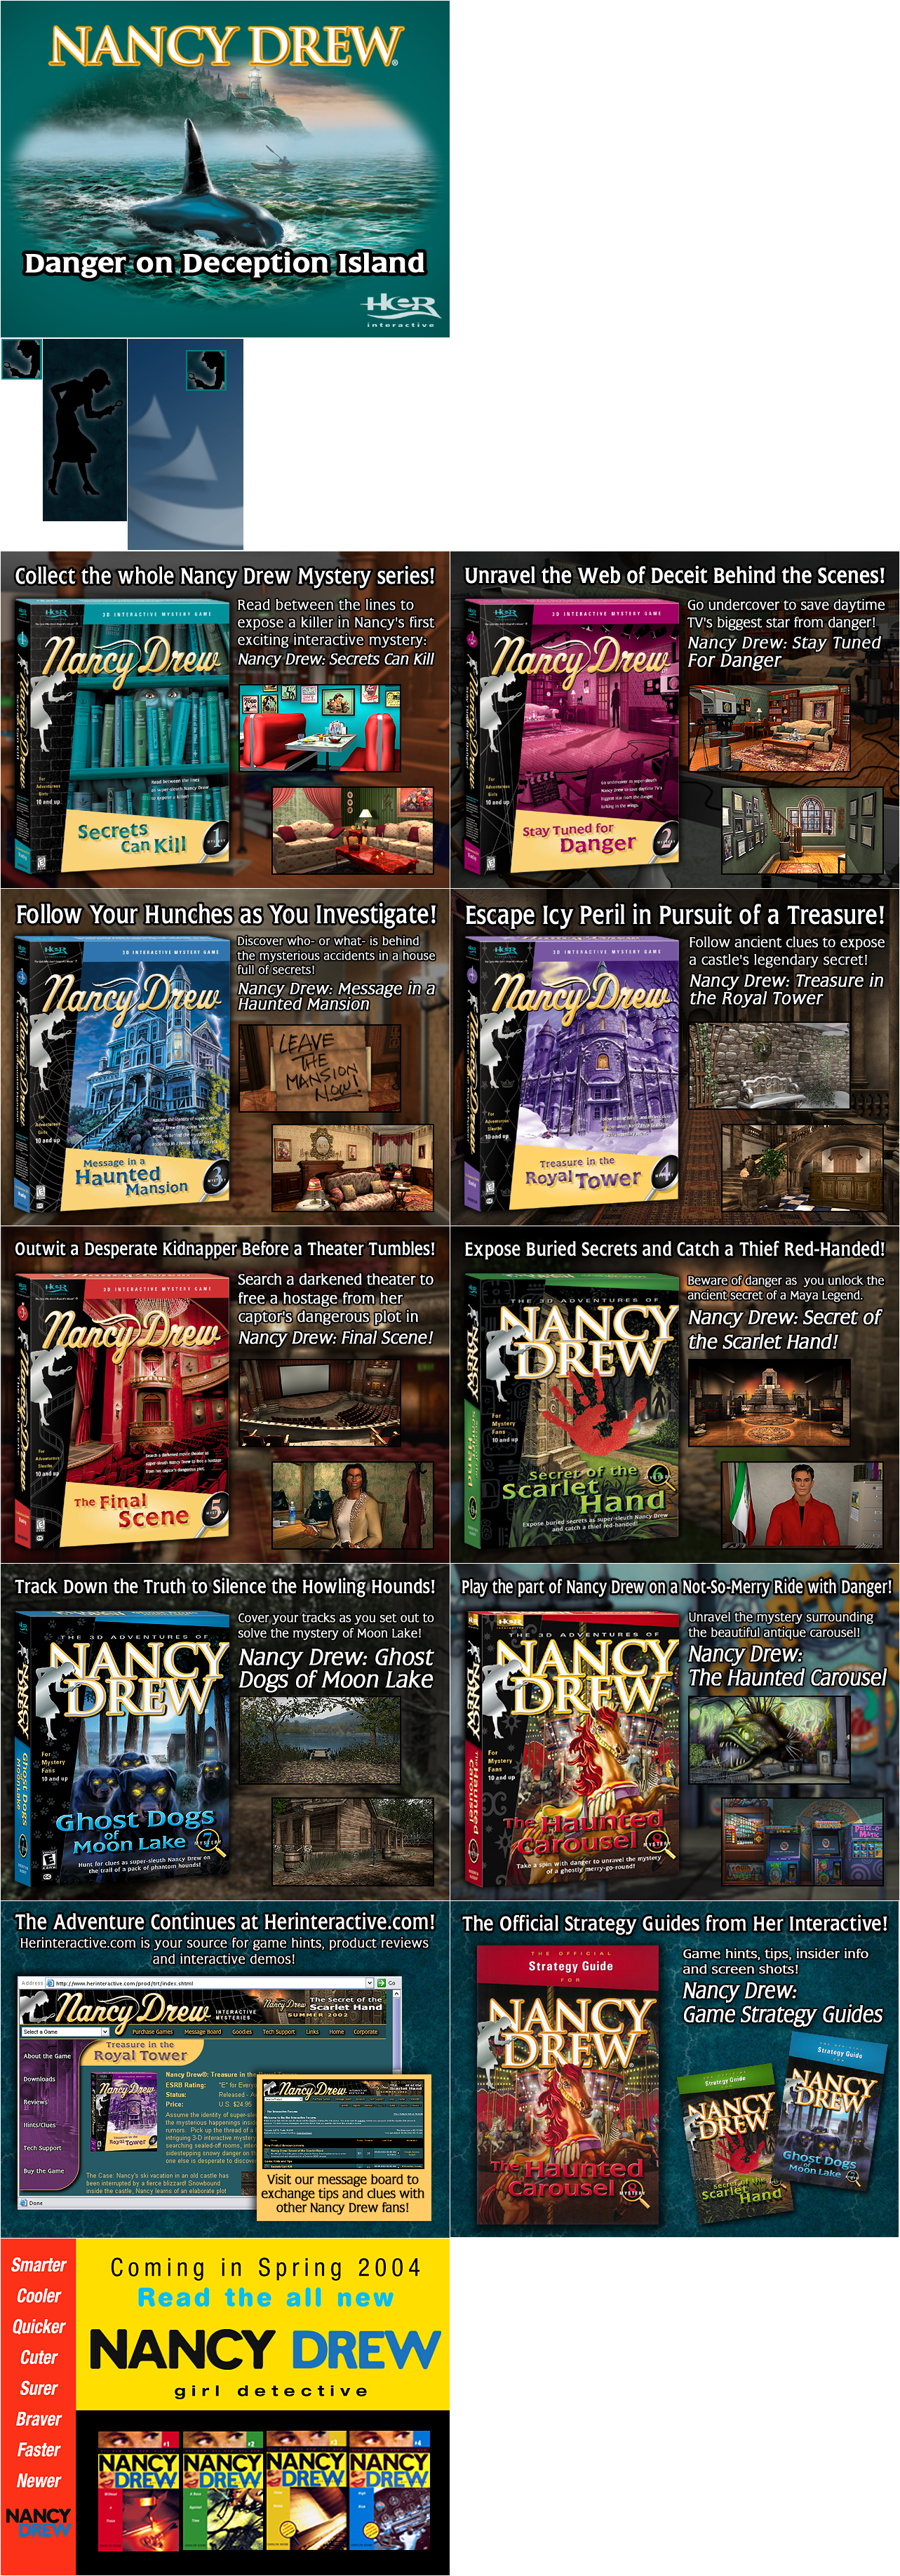 Nancy Drew: Danger on Deception Island - Setup Images